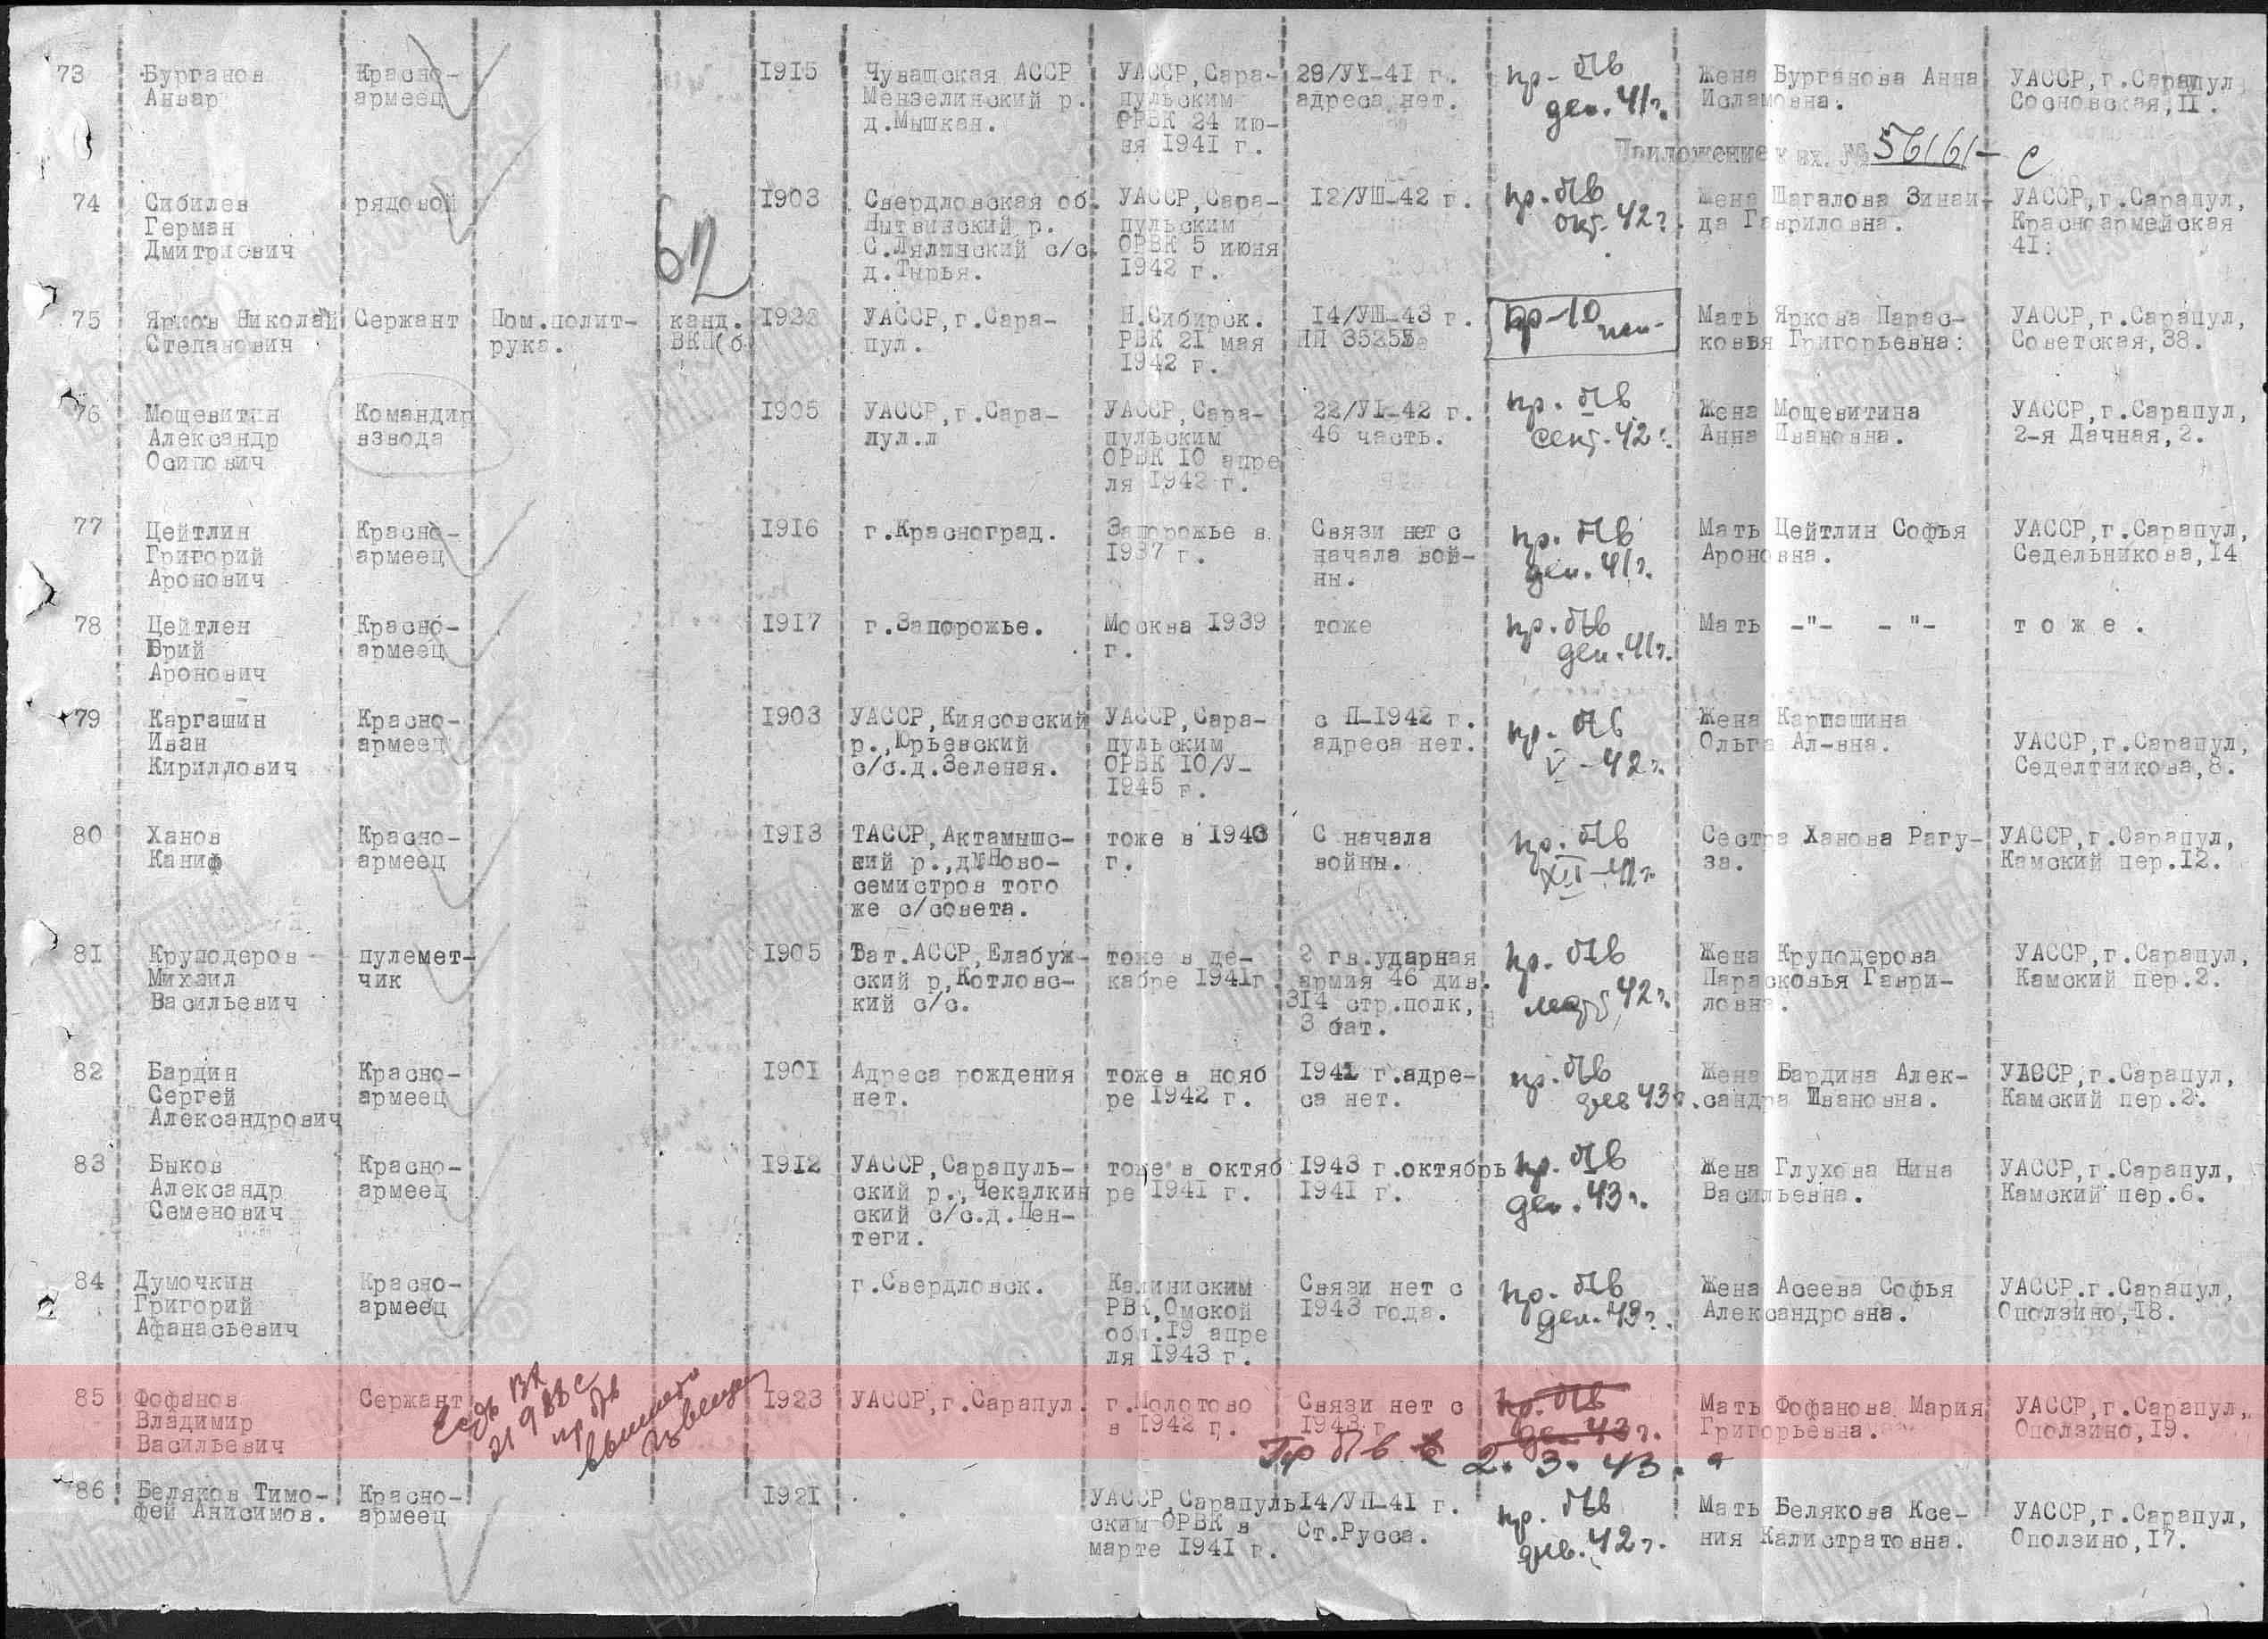 Лист донесения послевоенного периода, уточняющего потери, 02.07.1946